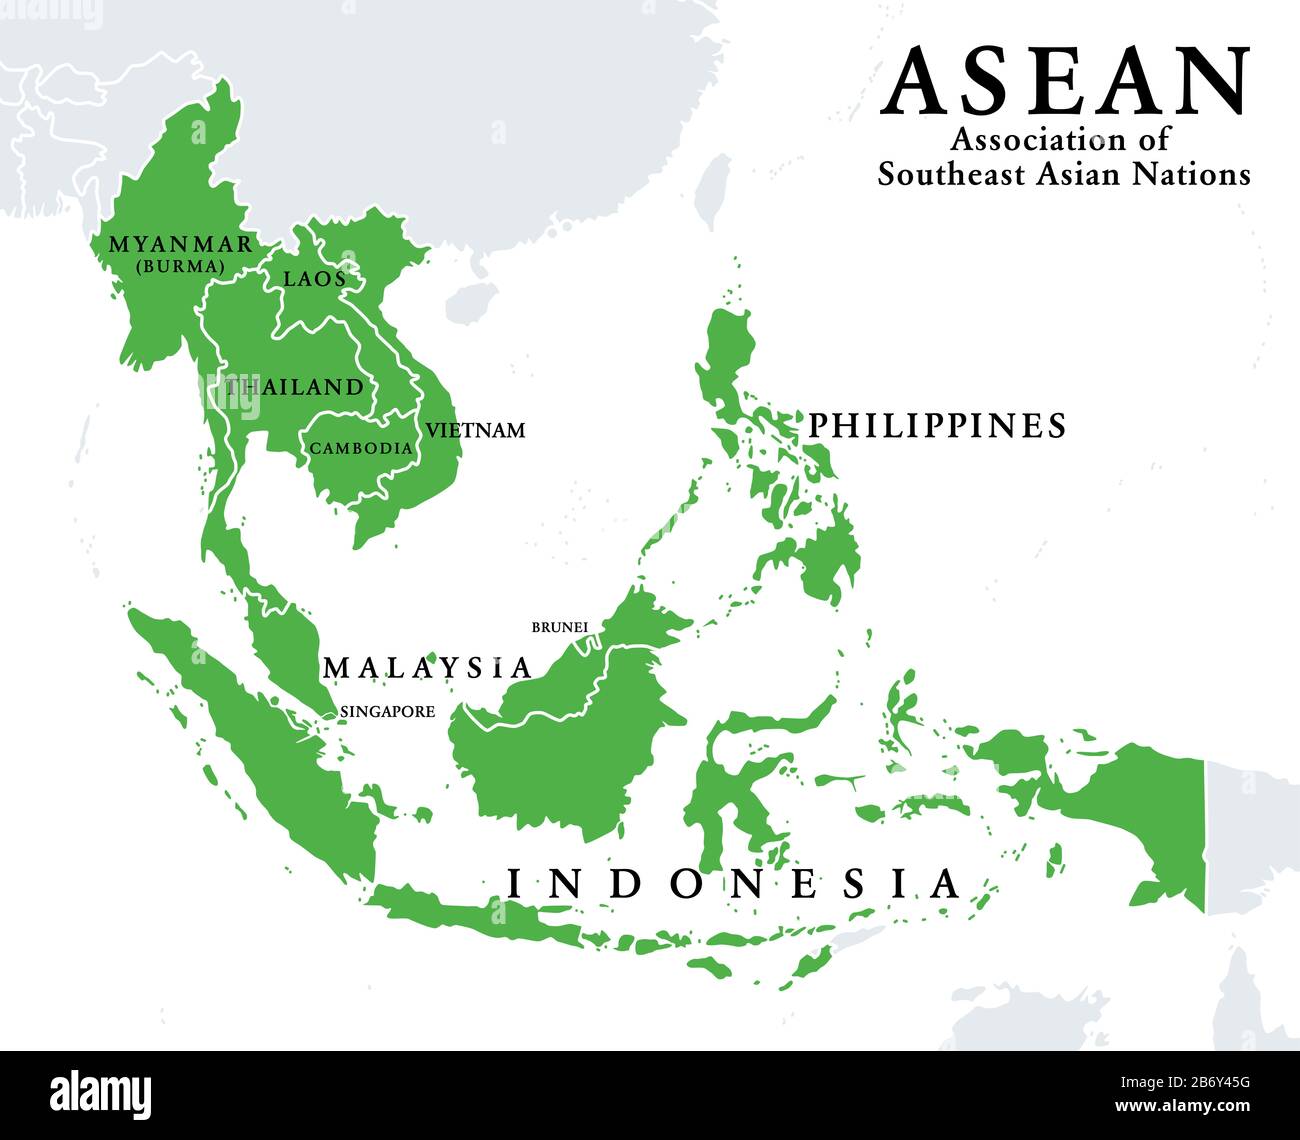 ASEAN-Mitgliedsstaaten, Infografik und Karte. Verband Südostasiatischer Nationen, eine regionale zwischenstaatliche Organisation mit 10 Mitgliedsländern. Stockfoto